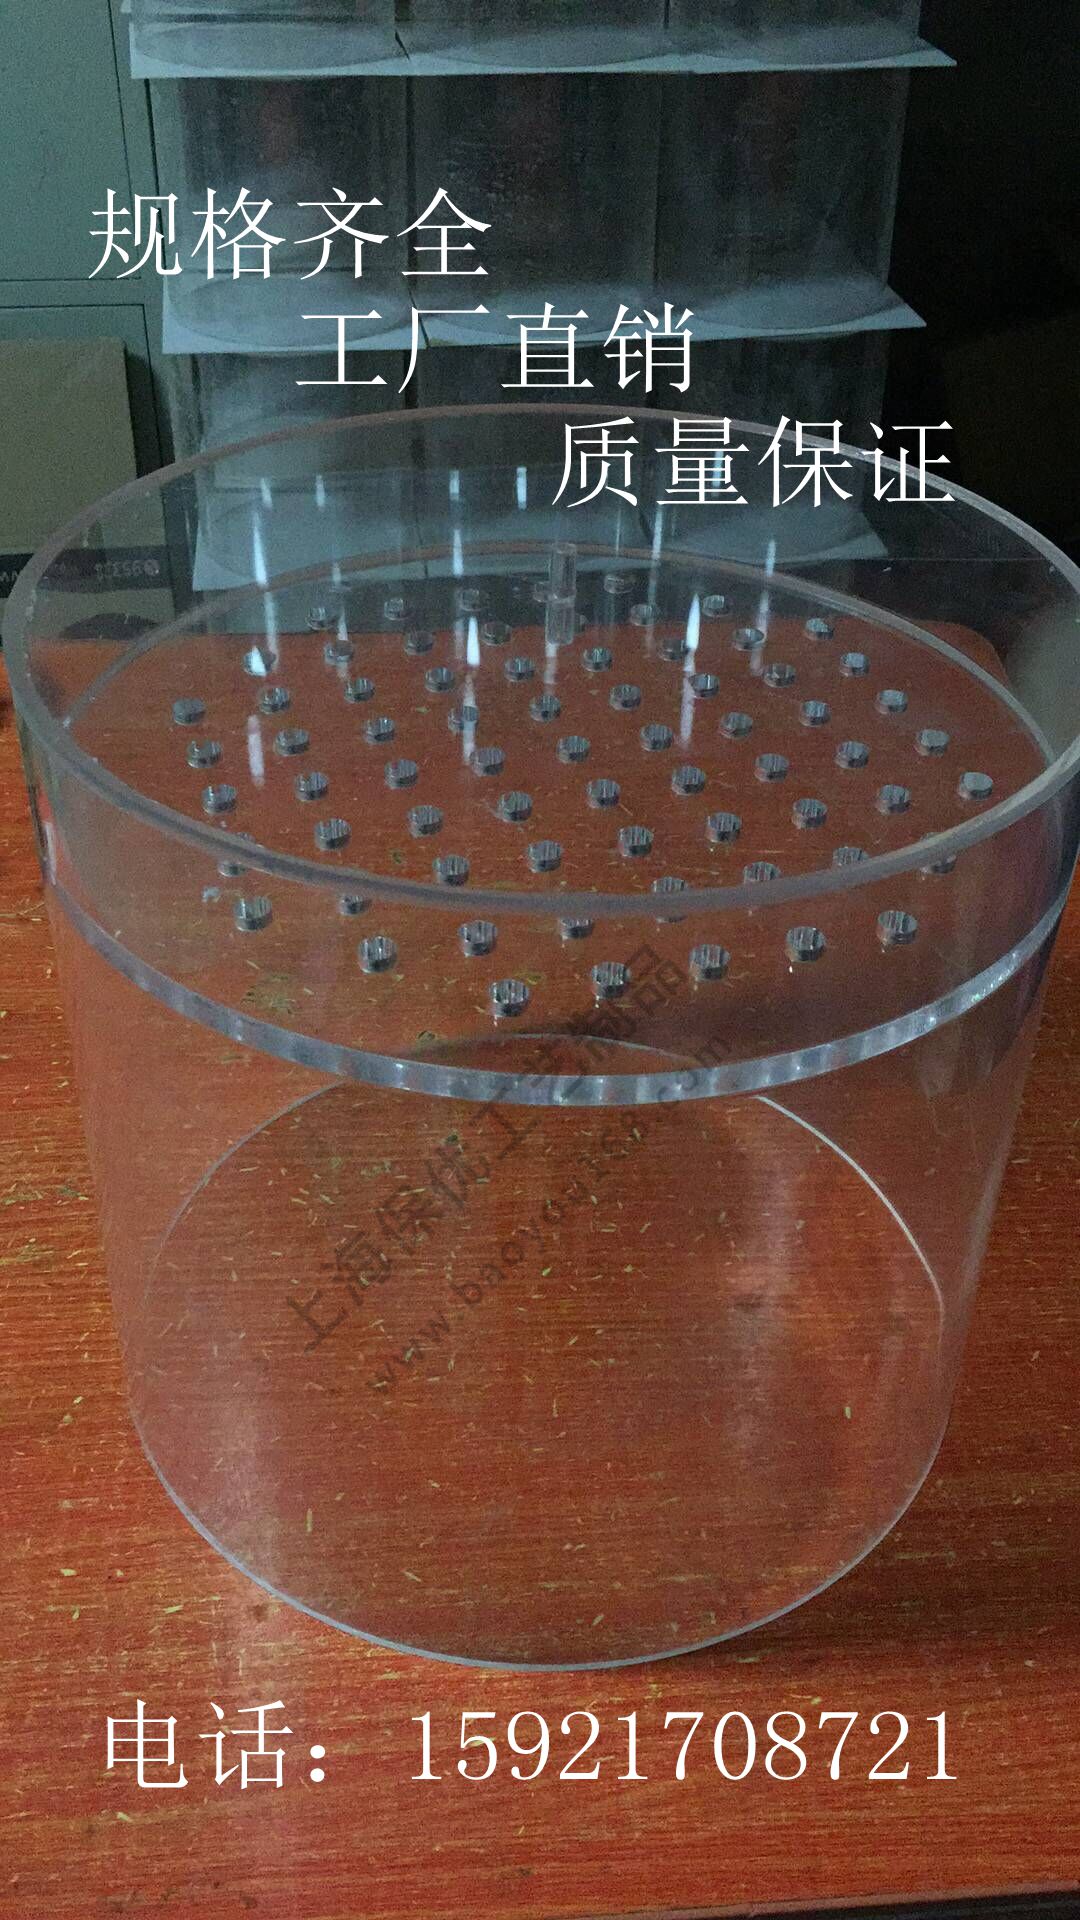 高透明有机玻璃亚克力空心圆管子配件异形筒加工切割定制婚庆花瓶